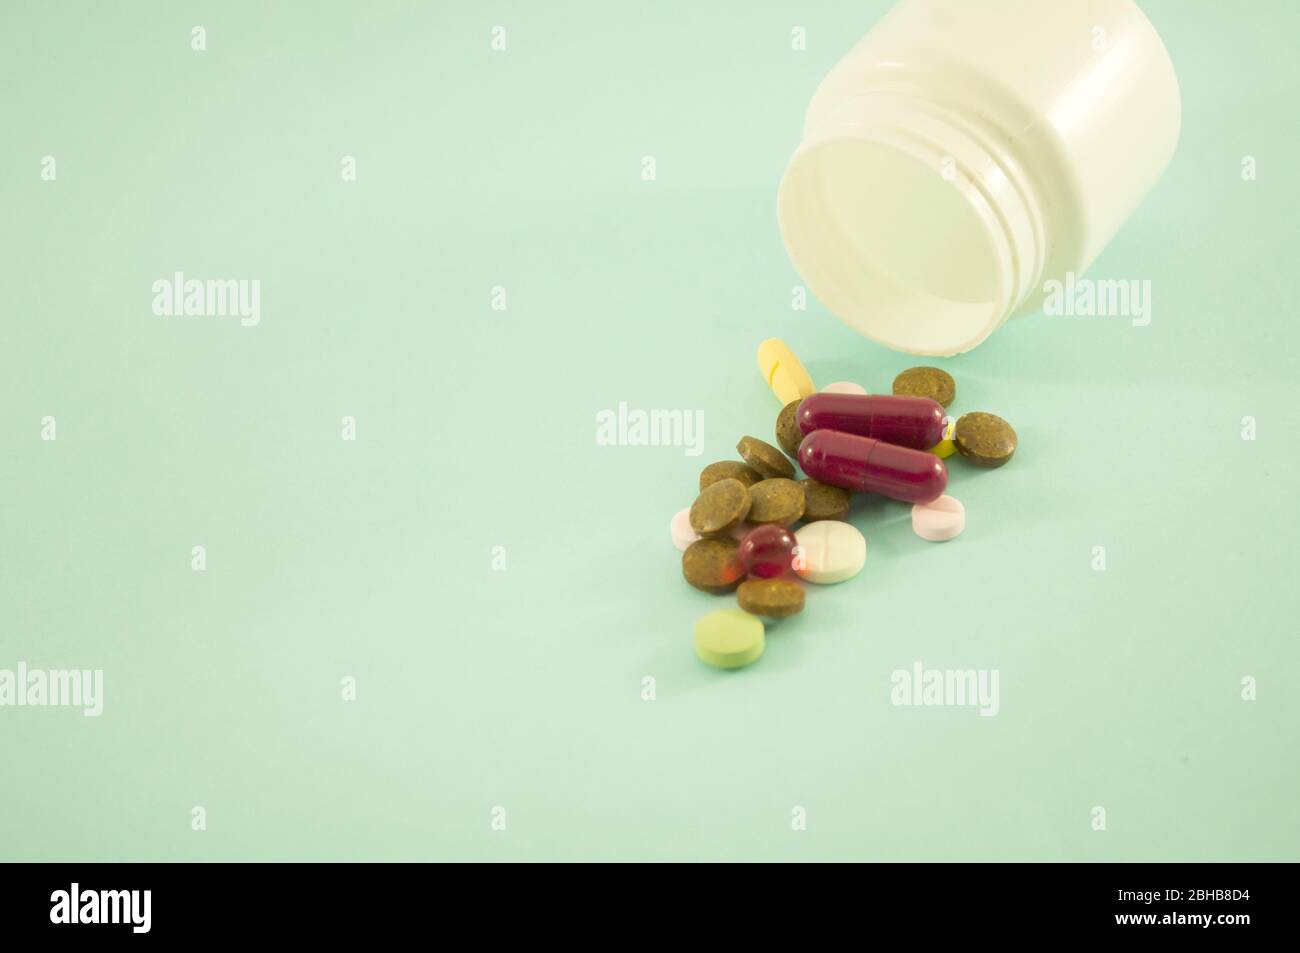 Mescolare le pillole e la bottiglia per le pillole su uno sfondo blu. Pillole sparse con vasi bianchi su sfondo verde. Spazio di copia per il testo Foto Stock